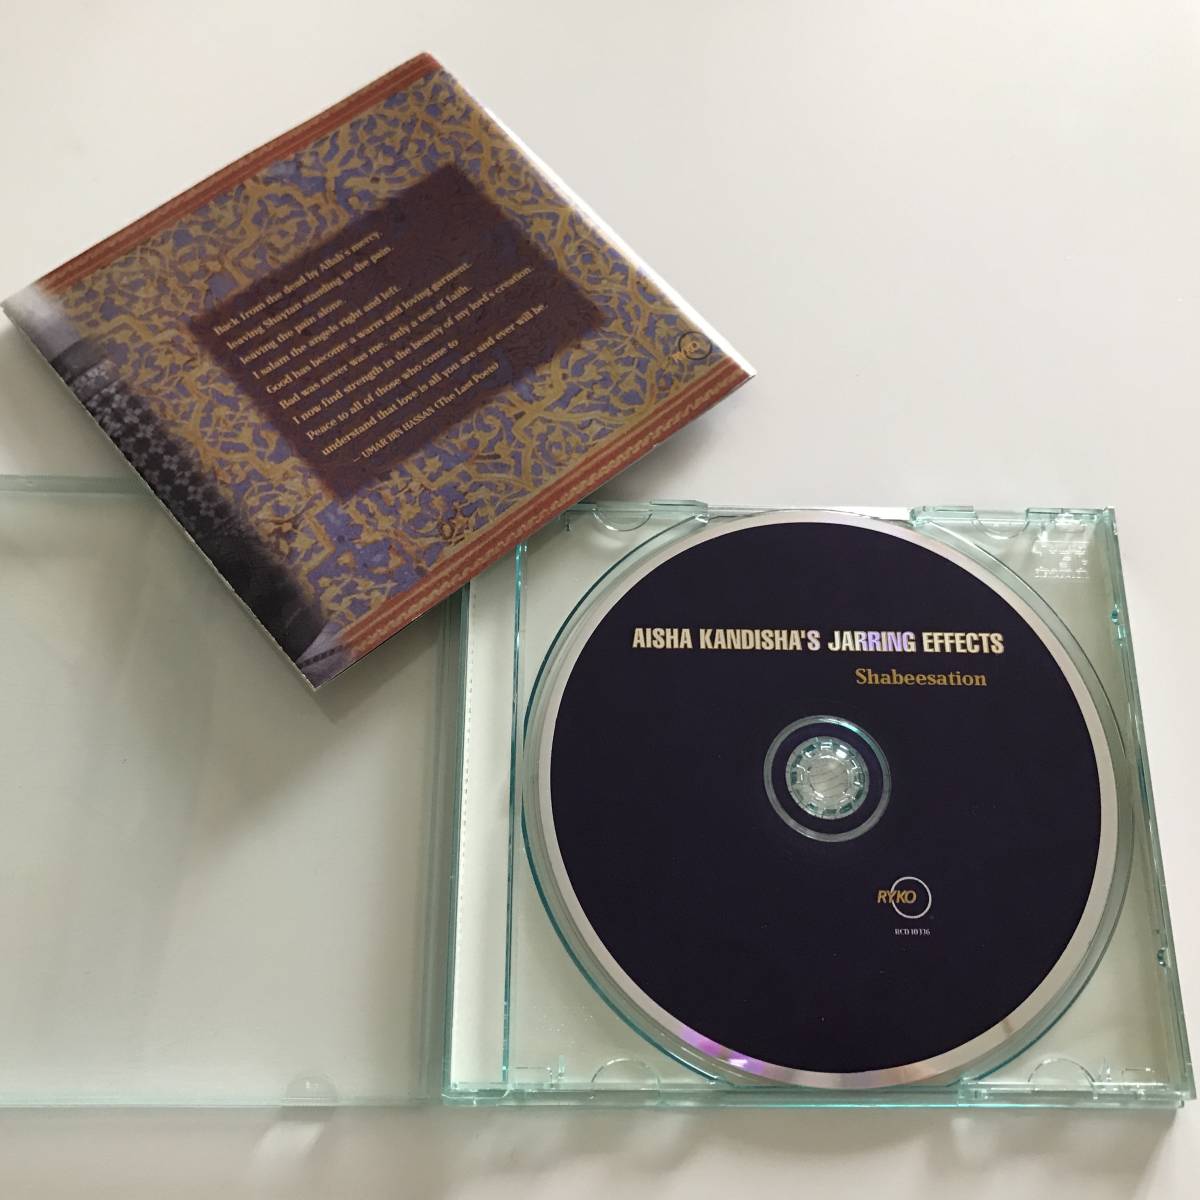 中古CD Aisha Kandisha's Jarring Effects Shabeesation モロッコ Bill Laswell ビル・ラズウェル